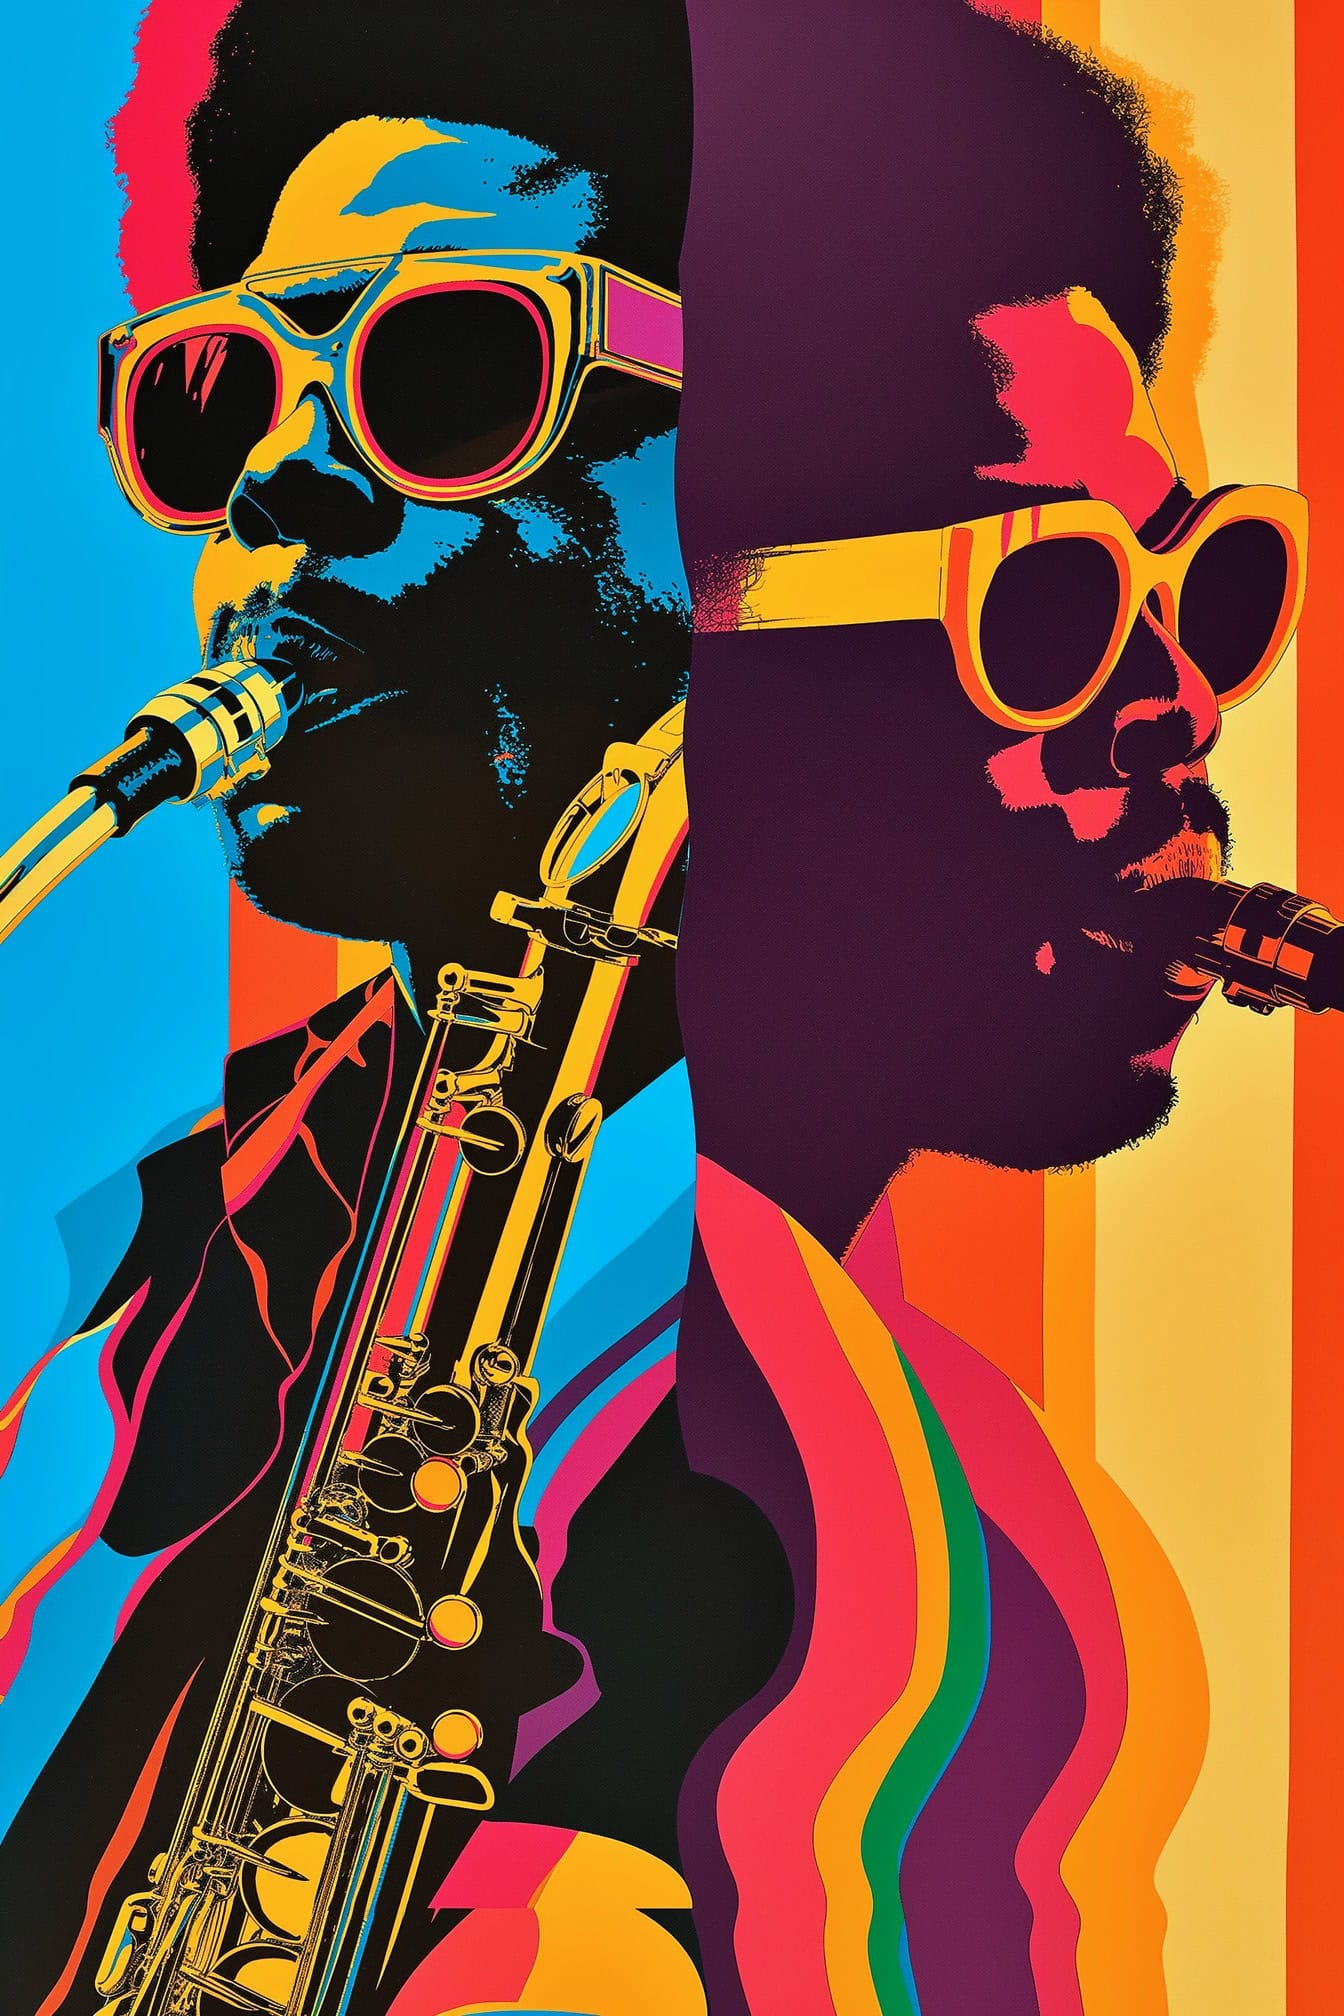 Cartel que celebra la cultura musical afroamericana con dos músicos de jazz con gafas de sol y un saxofón